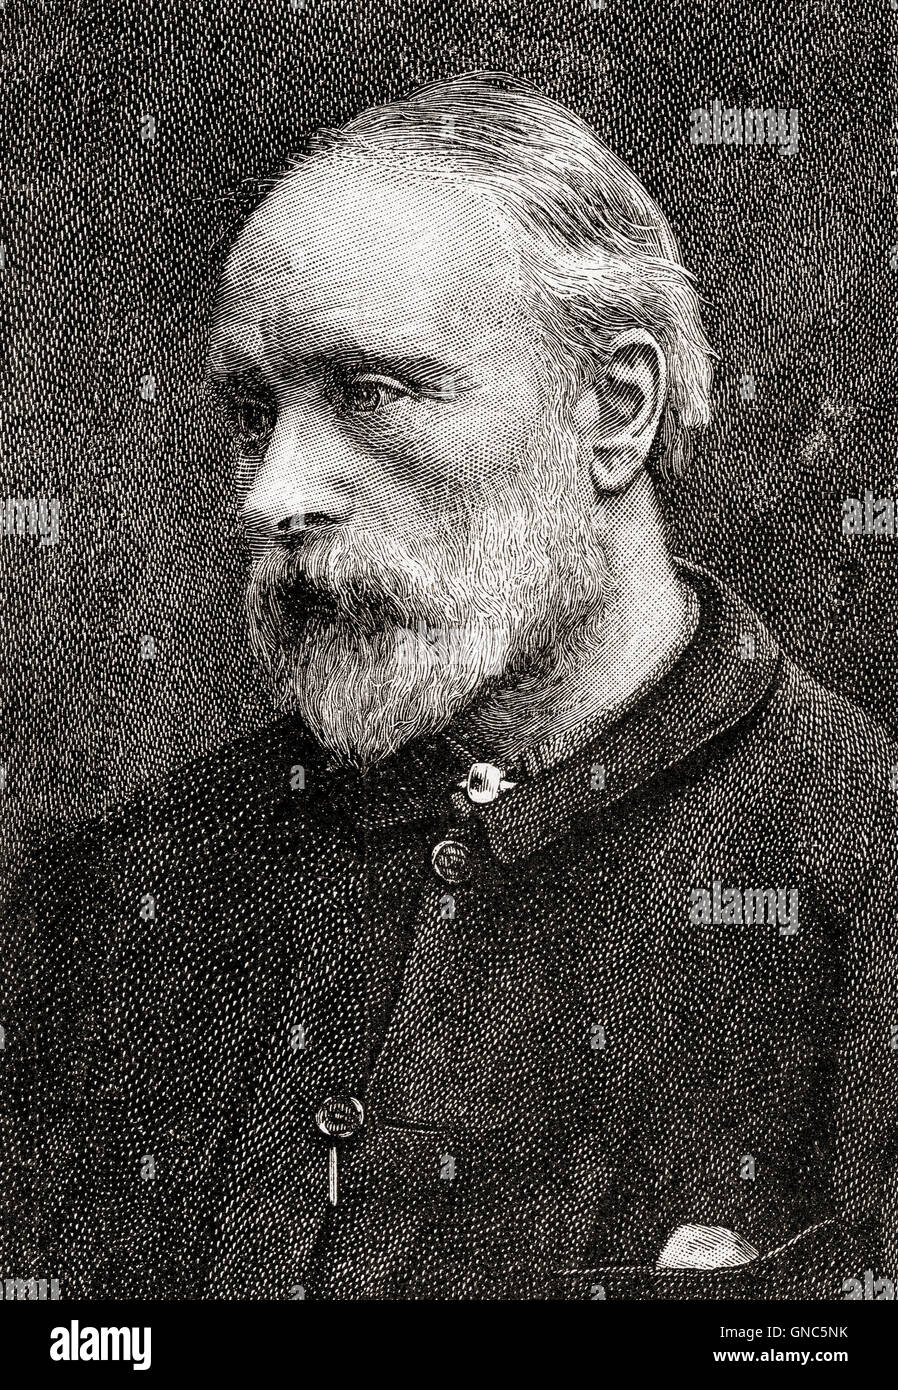 Sir Edward Coley Burne-Jones, 1º Baronet, 1833 - 1898. El artista y diseñador británico. Foto de stock